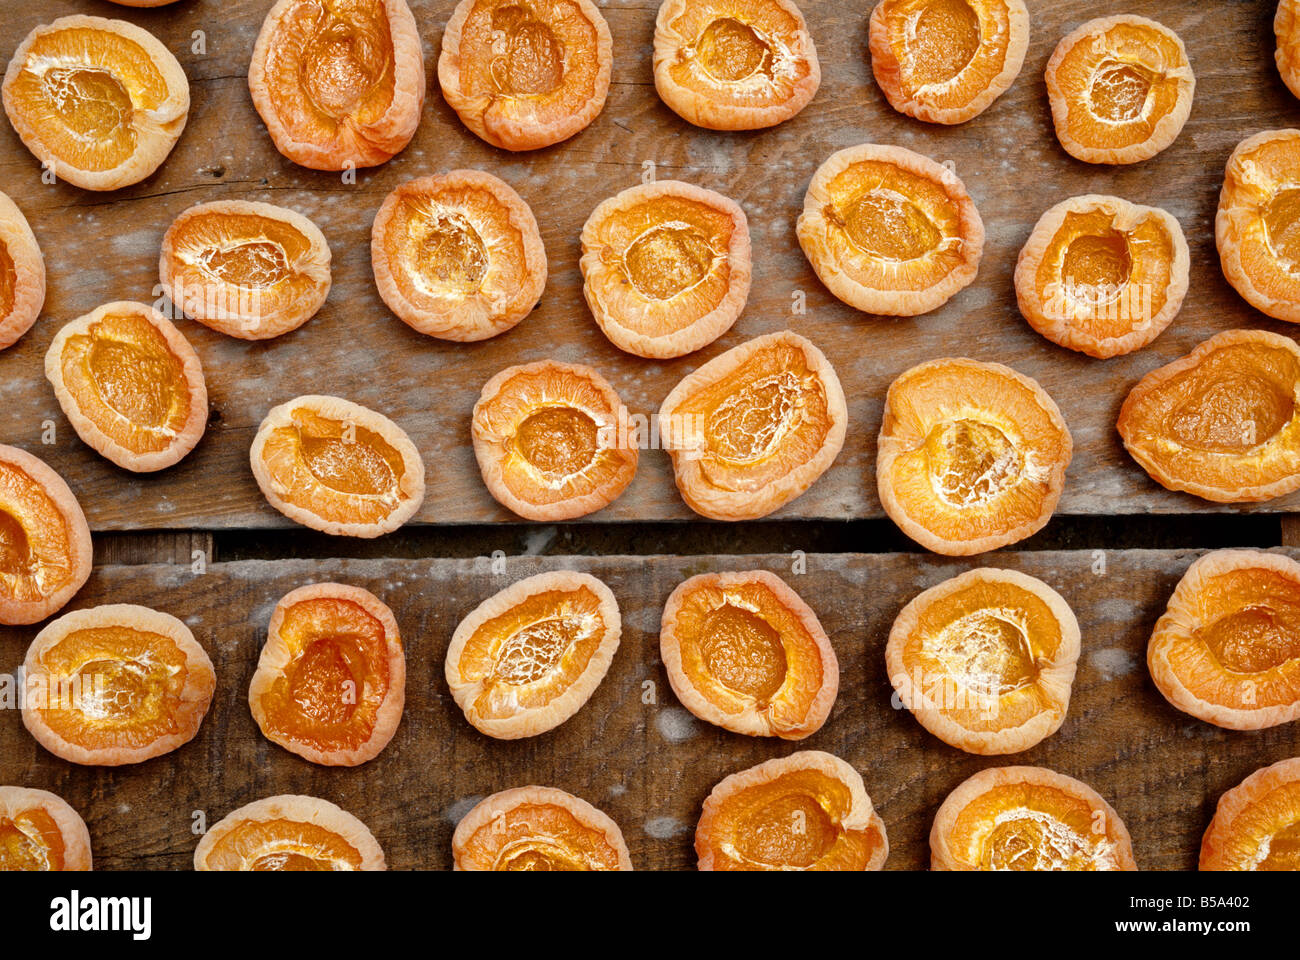 Les abricots coupés en deux 'nautrally' séchées au soleil. Banque D'Images